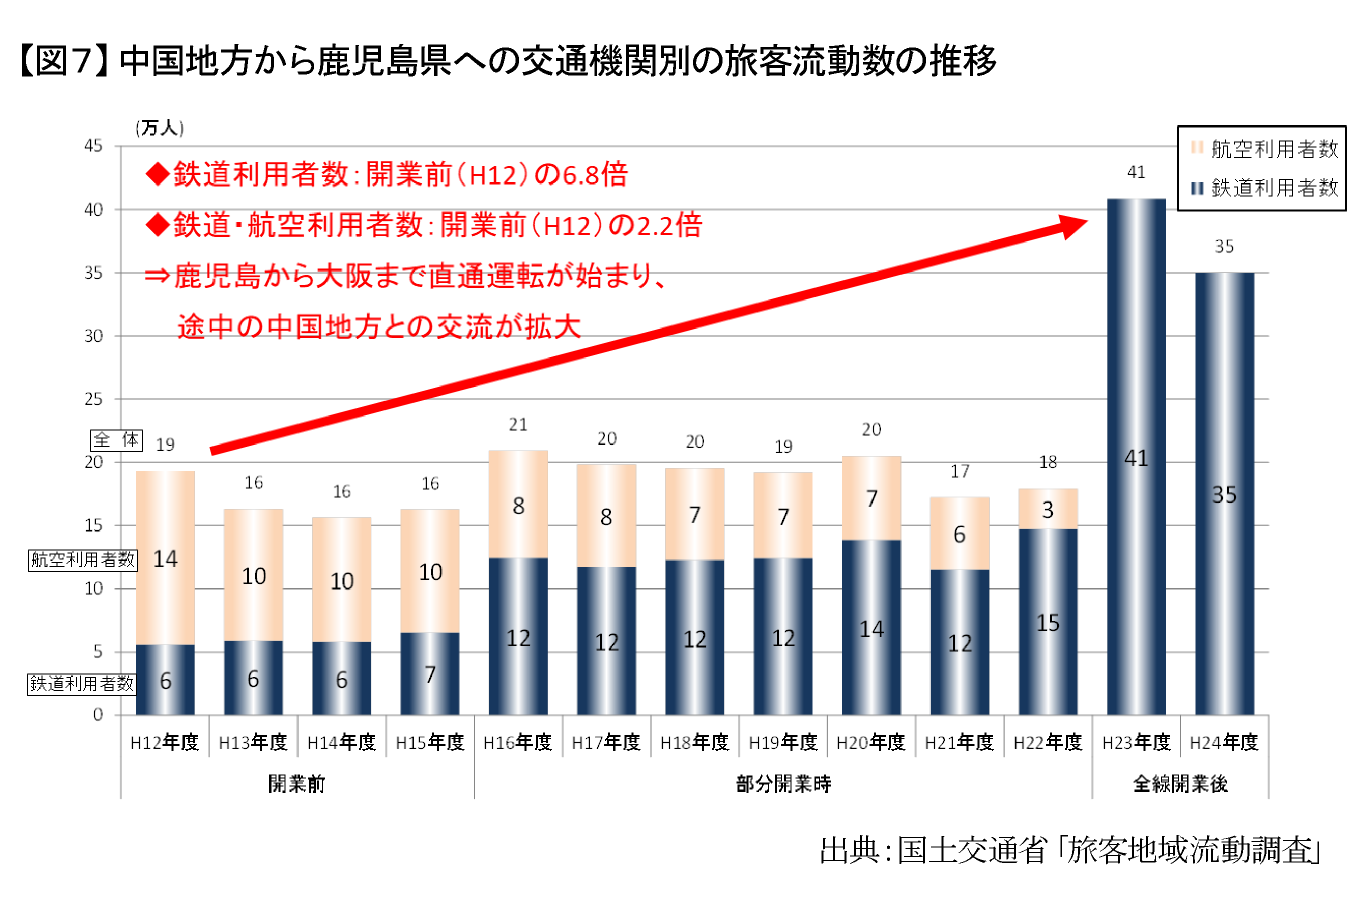 【図7】中国地方から鹿児島県への交通機関別の旅客流動数の推移